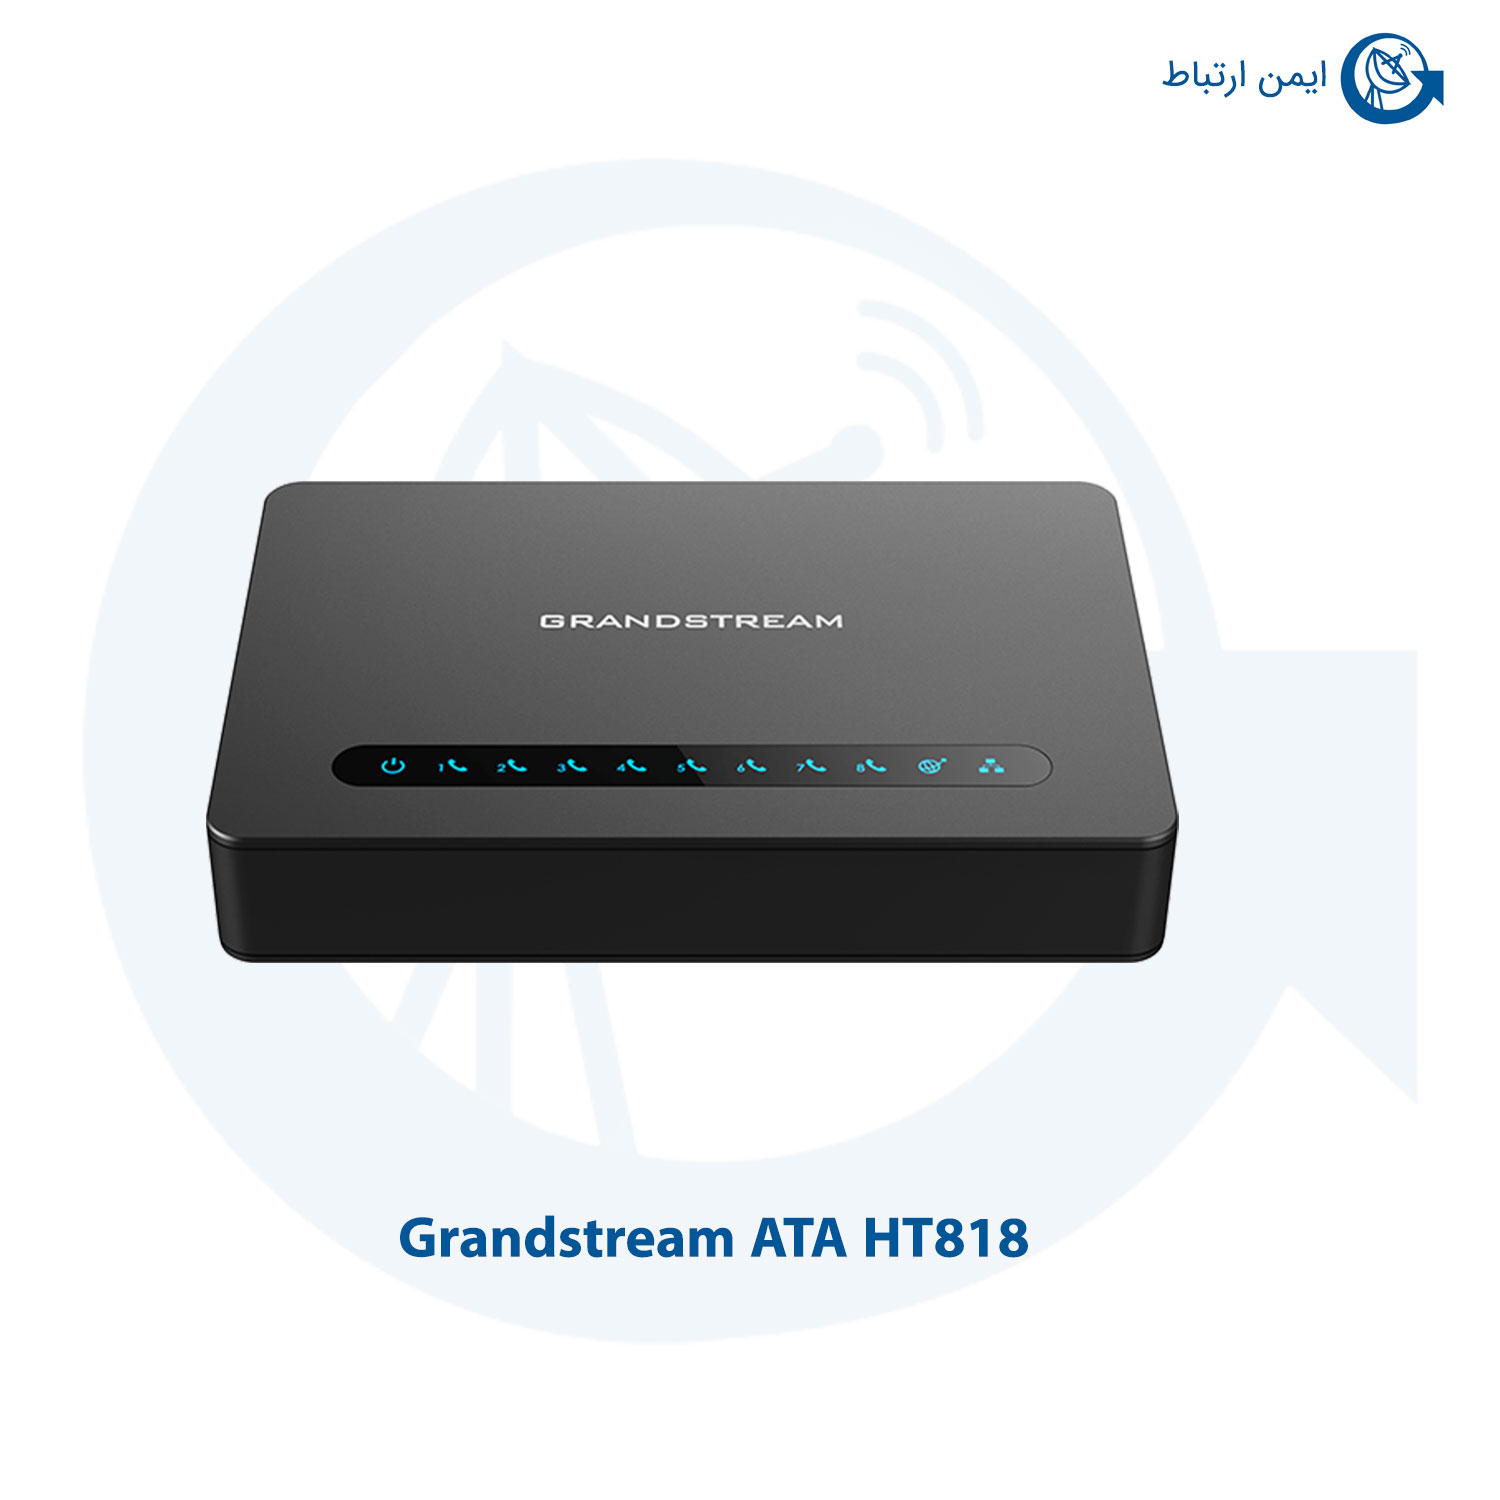 特別価格GRANDSTREAM ATA-HT818好評販売中 - パソコン周辺機器